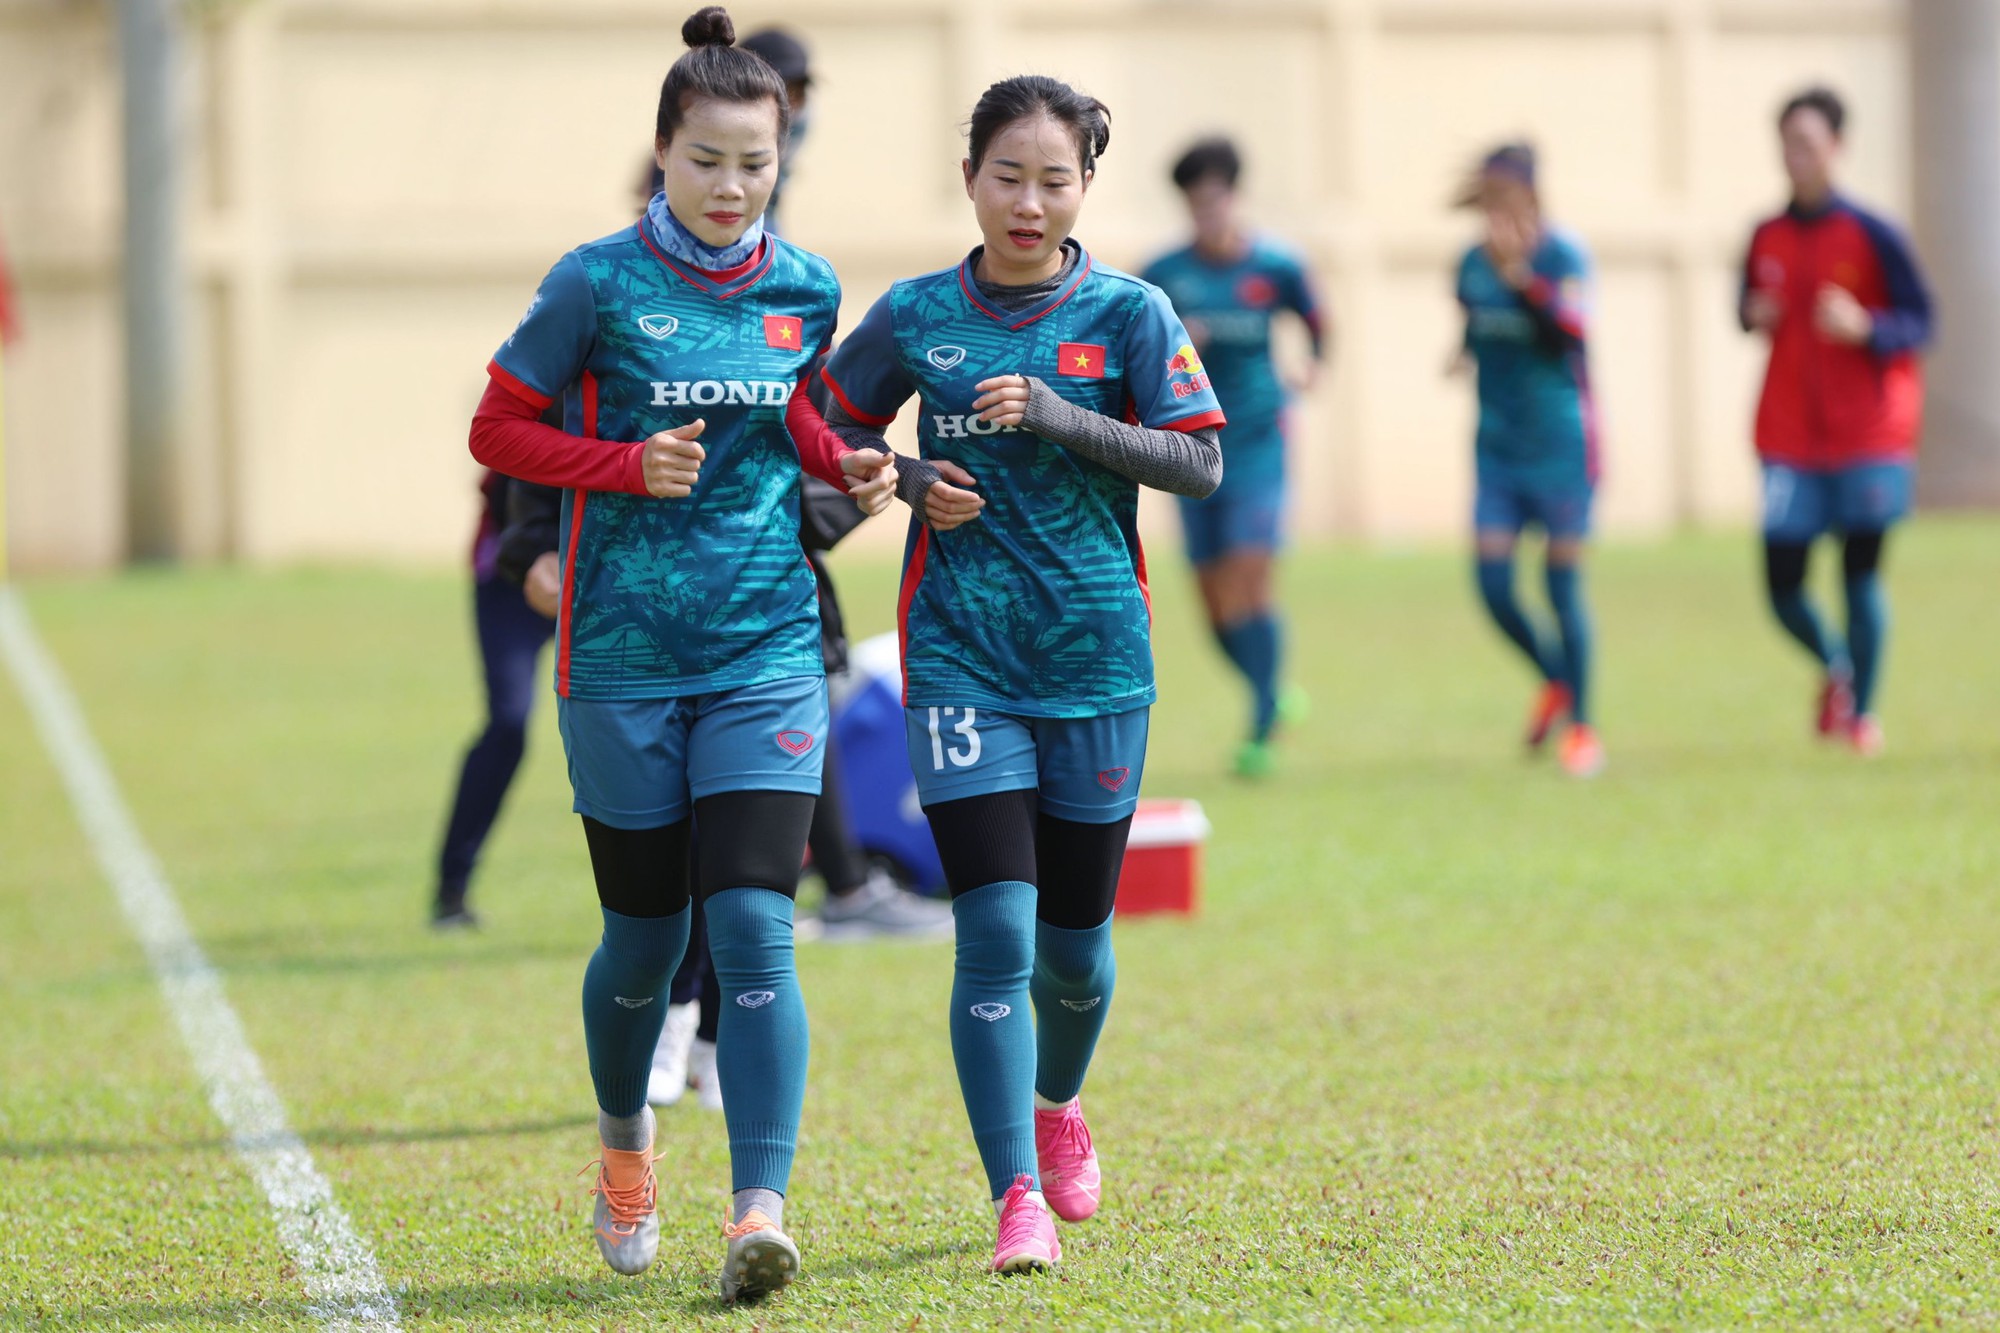 Trần Thị Thúy Nga tuyển nữ Việt Nam: Sẽ làm nên chuyện ở World Cup nữ 2023? - Ảnh 2